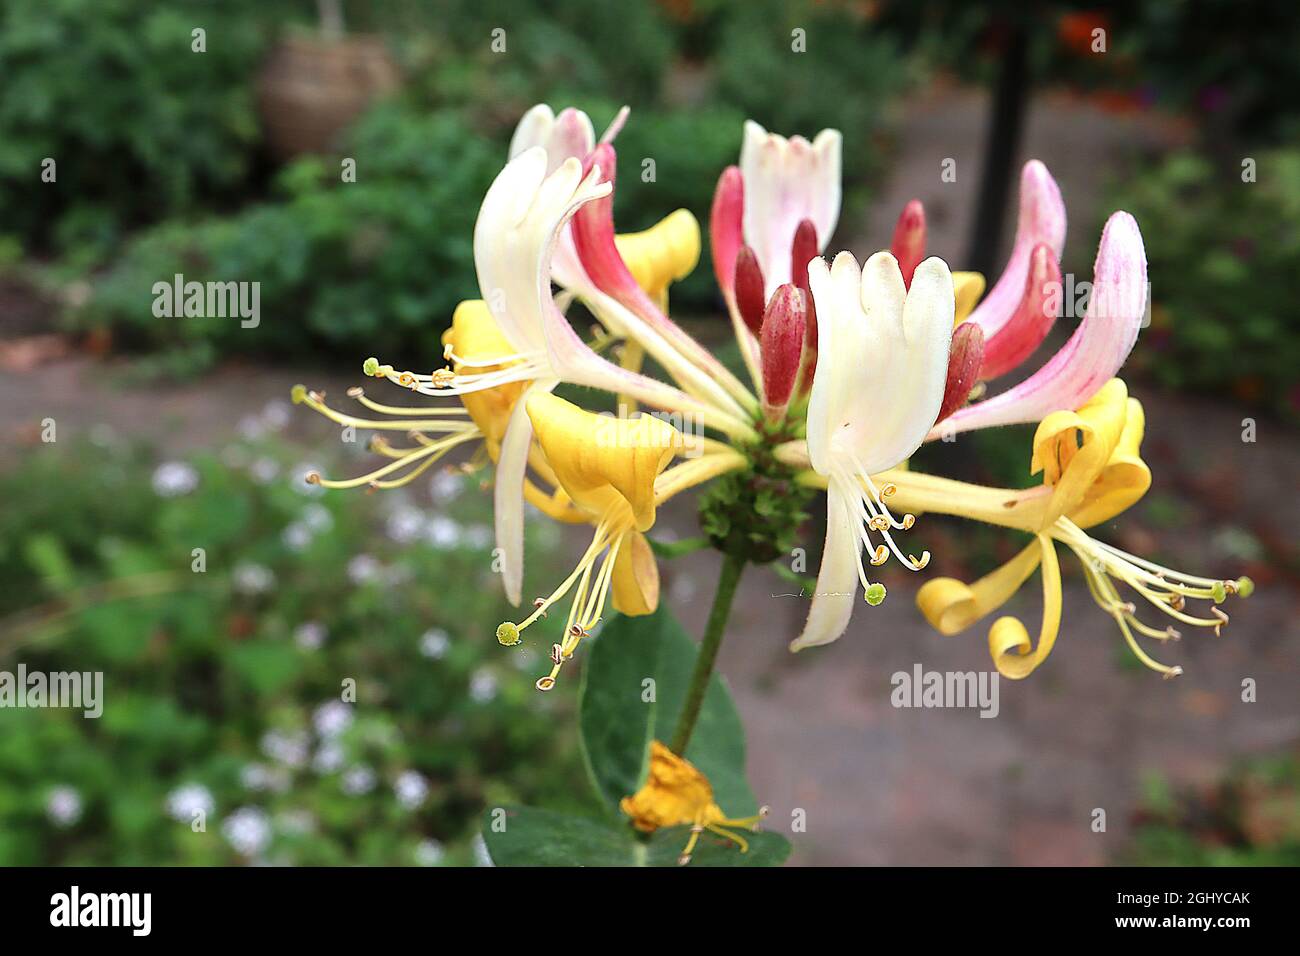 Lonicera periclymenum 'Belgica' Honeysuckle Belgica – whorls de flores blancas y amarillas de dos labios y abuletas de flores rosadas profundas curvadas hacia arriba, agosto Foto de stock